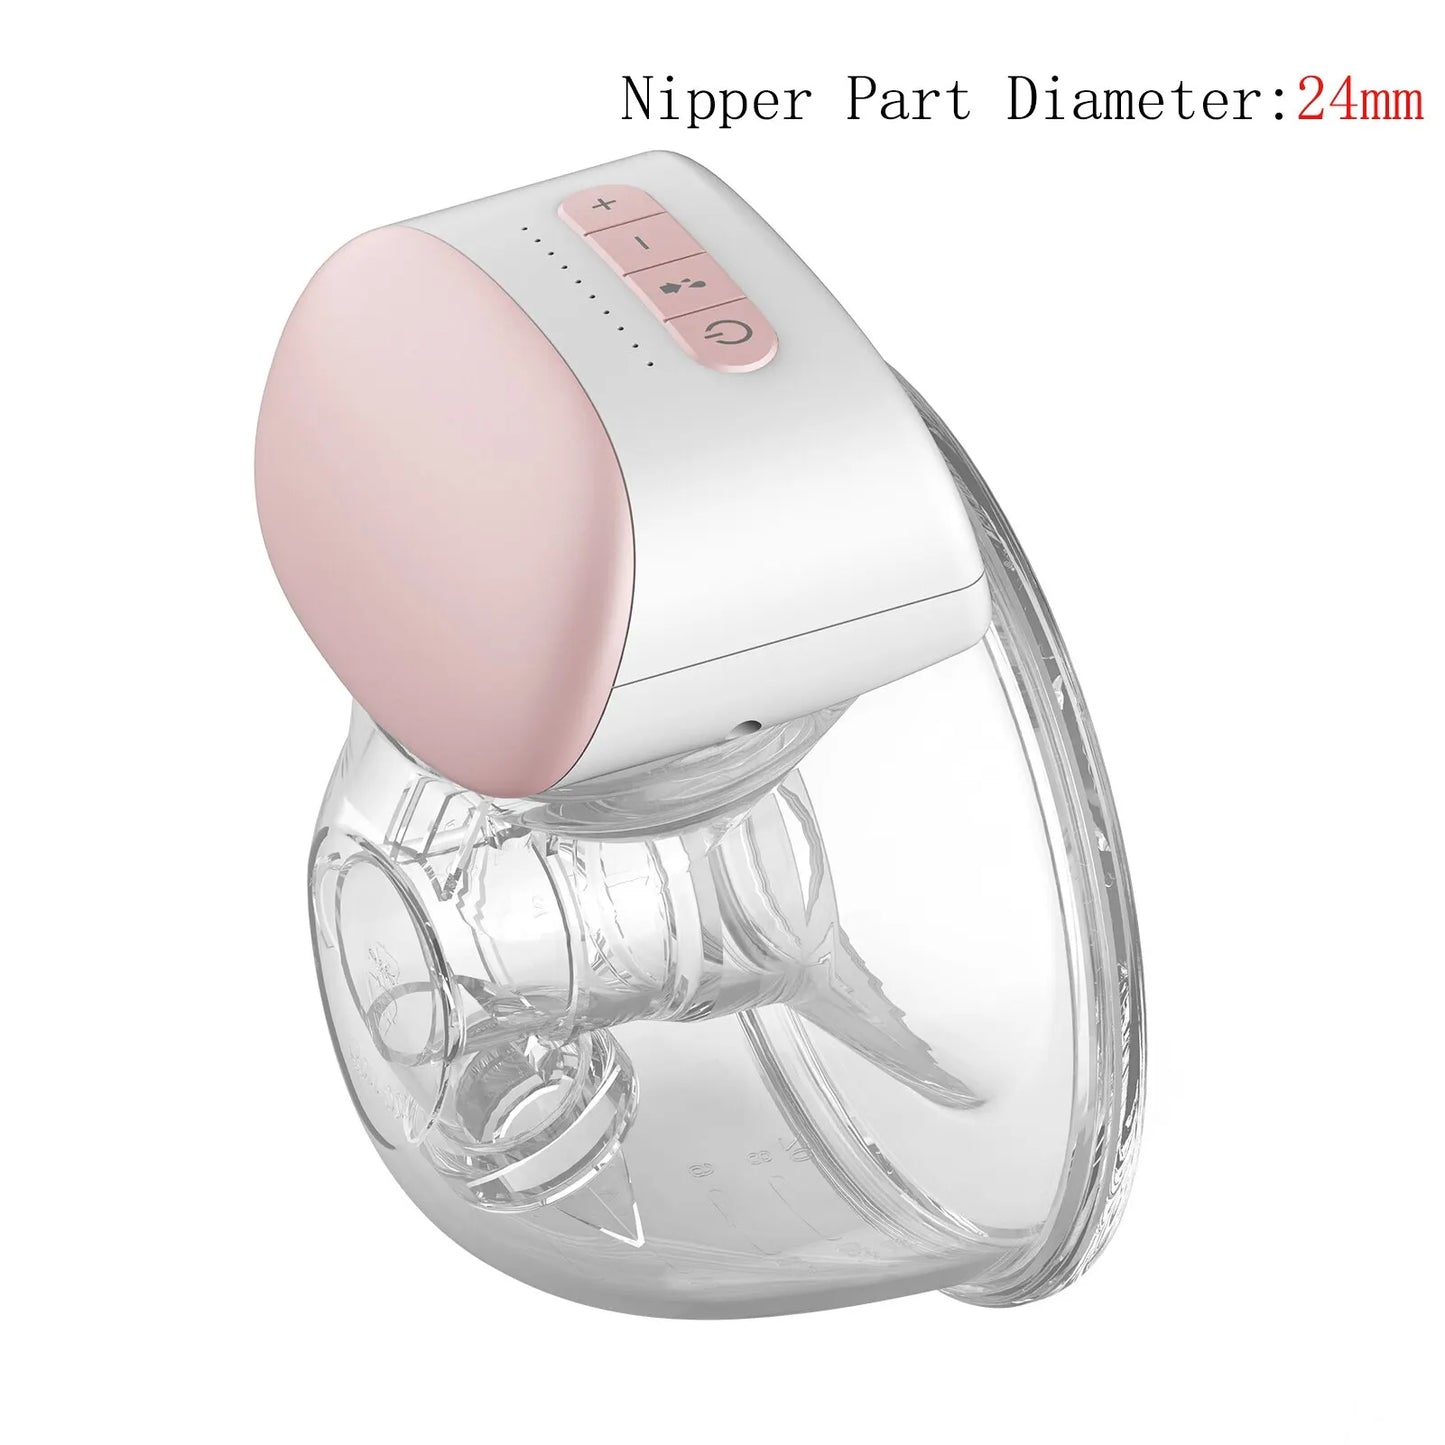 Tire-lait électrique portable BABY PREMA moderne avec une protection en silicone souple, conçu pour le confort de bébé, avec une partie pince de 24 mm de diamètre.